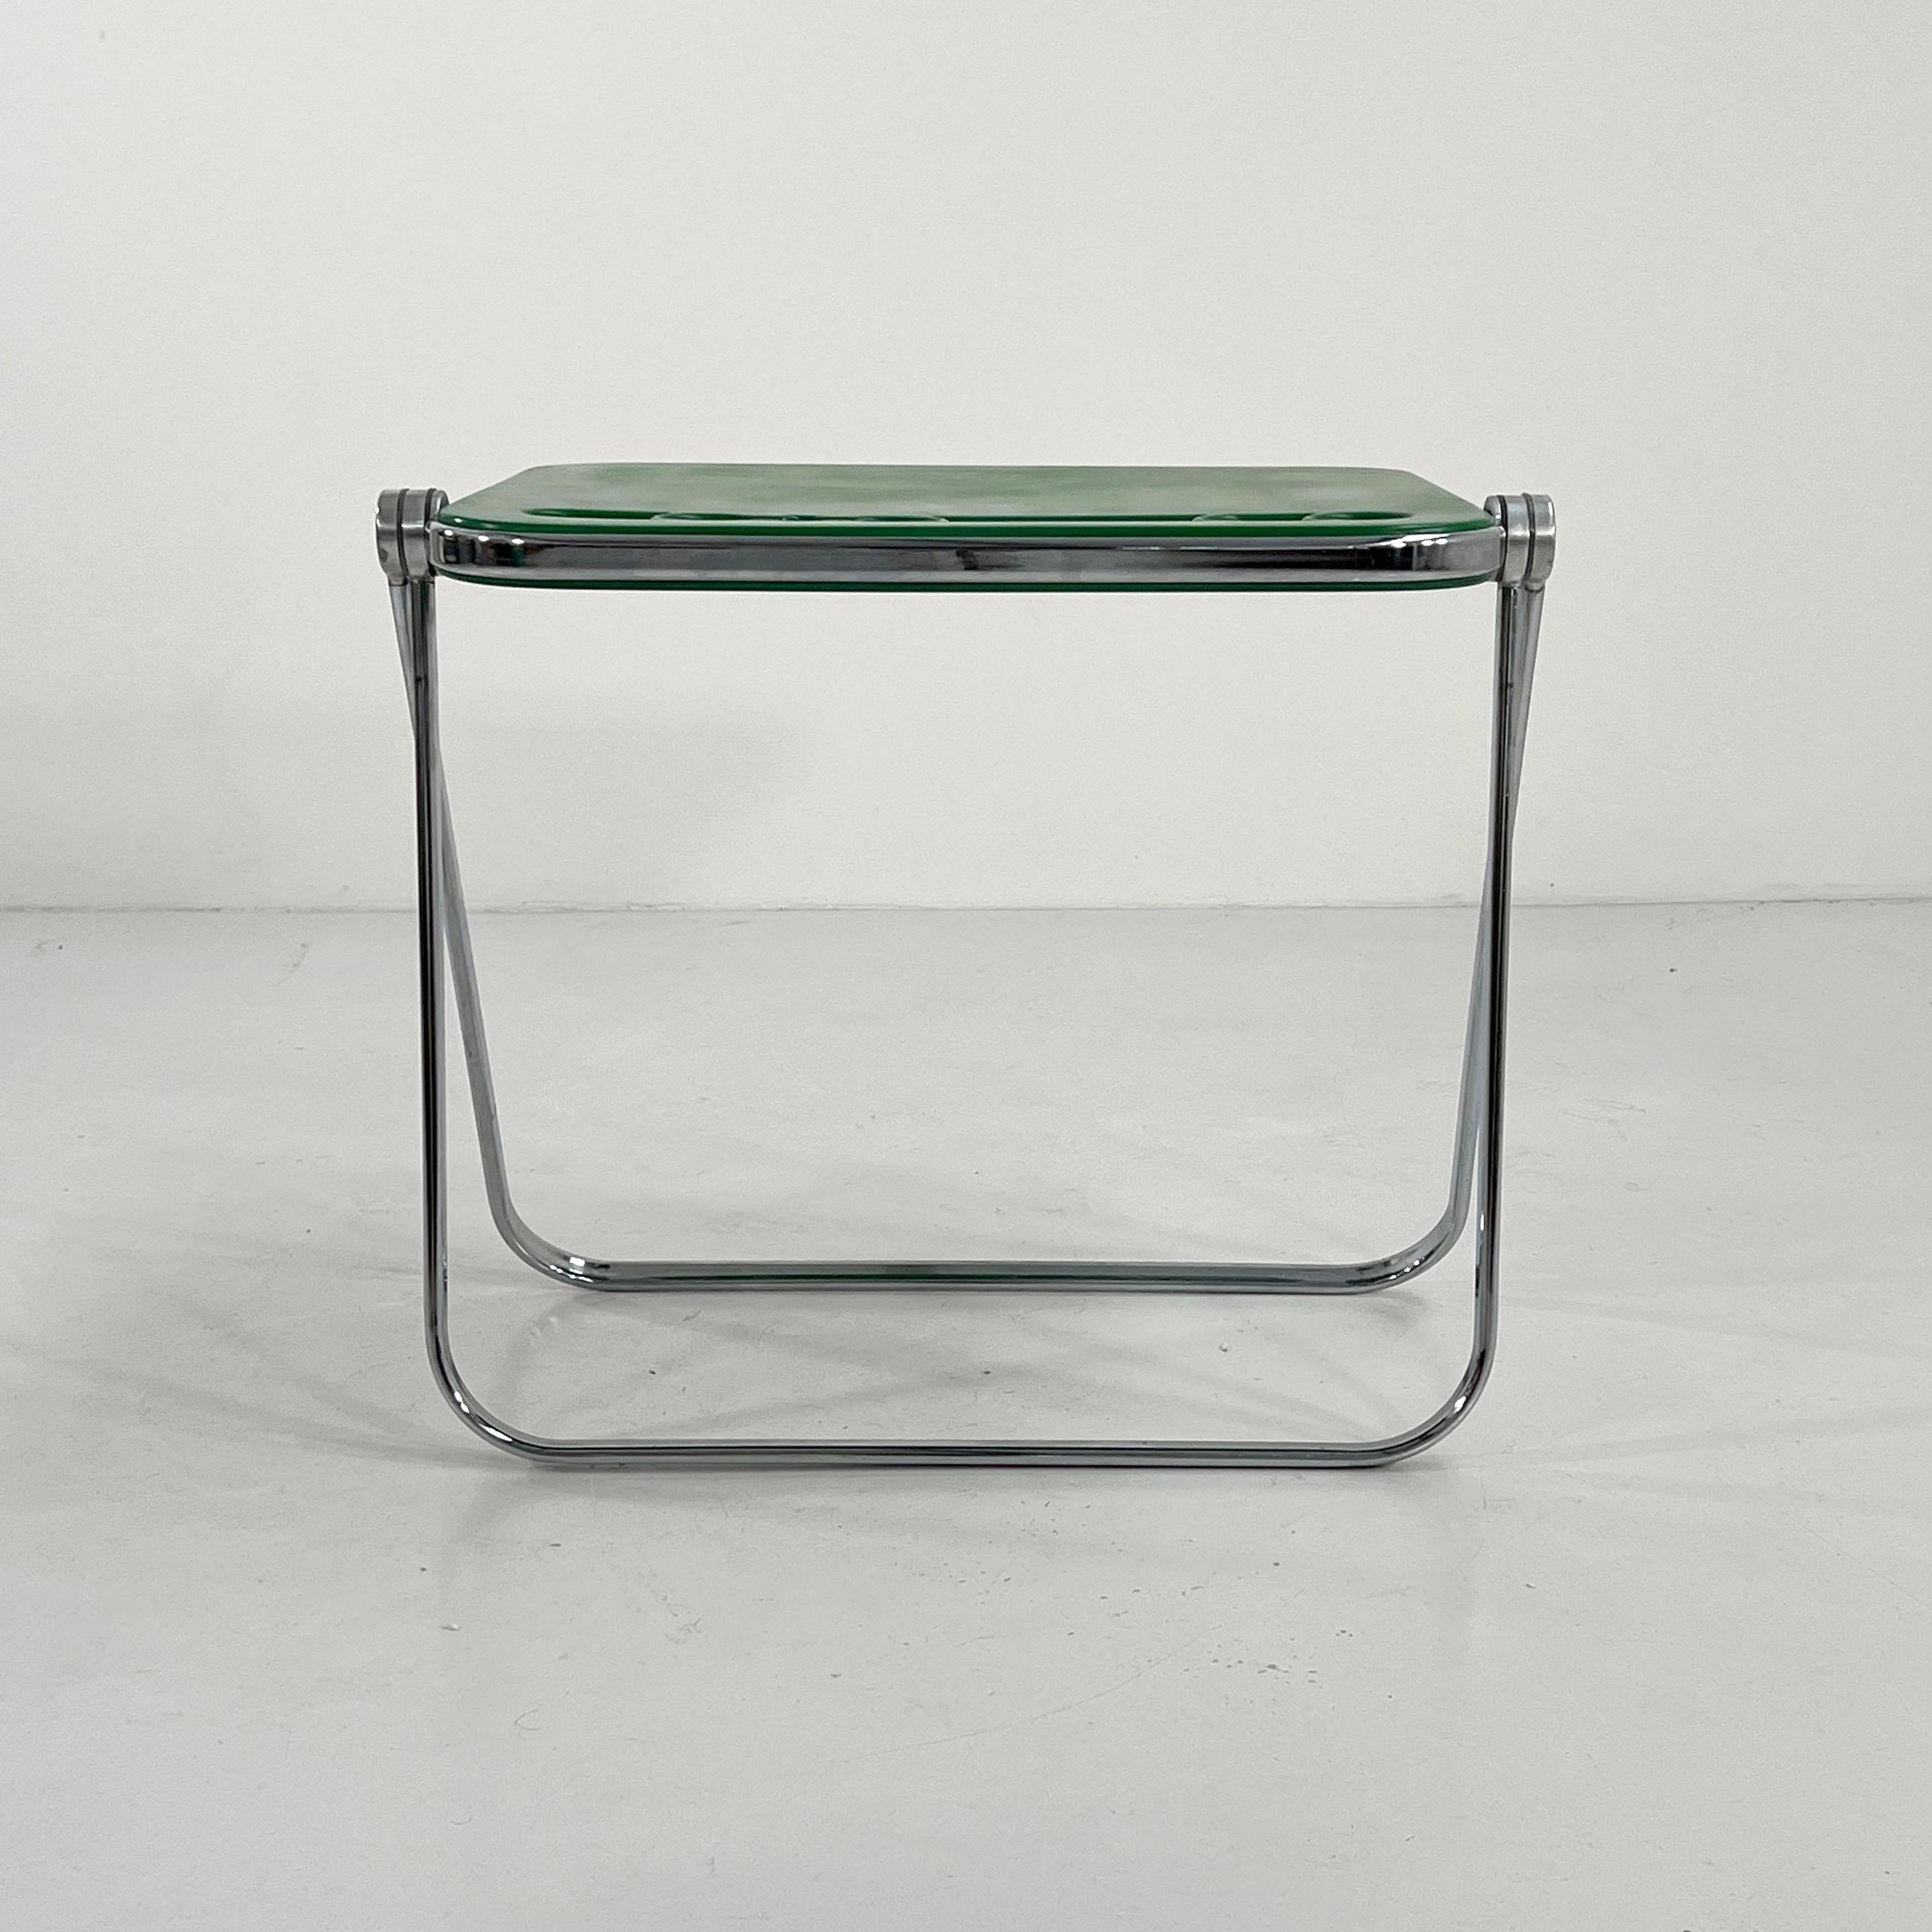 Late 20th Century Green Platone Folding Desk by Giancarlo Piretti for Anonima Castelli, 1970s